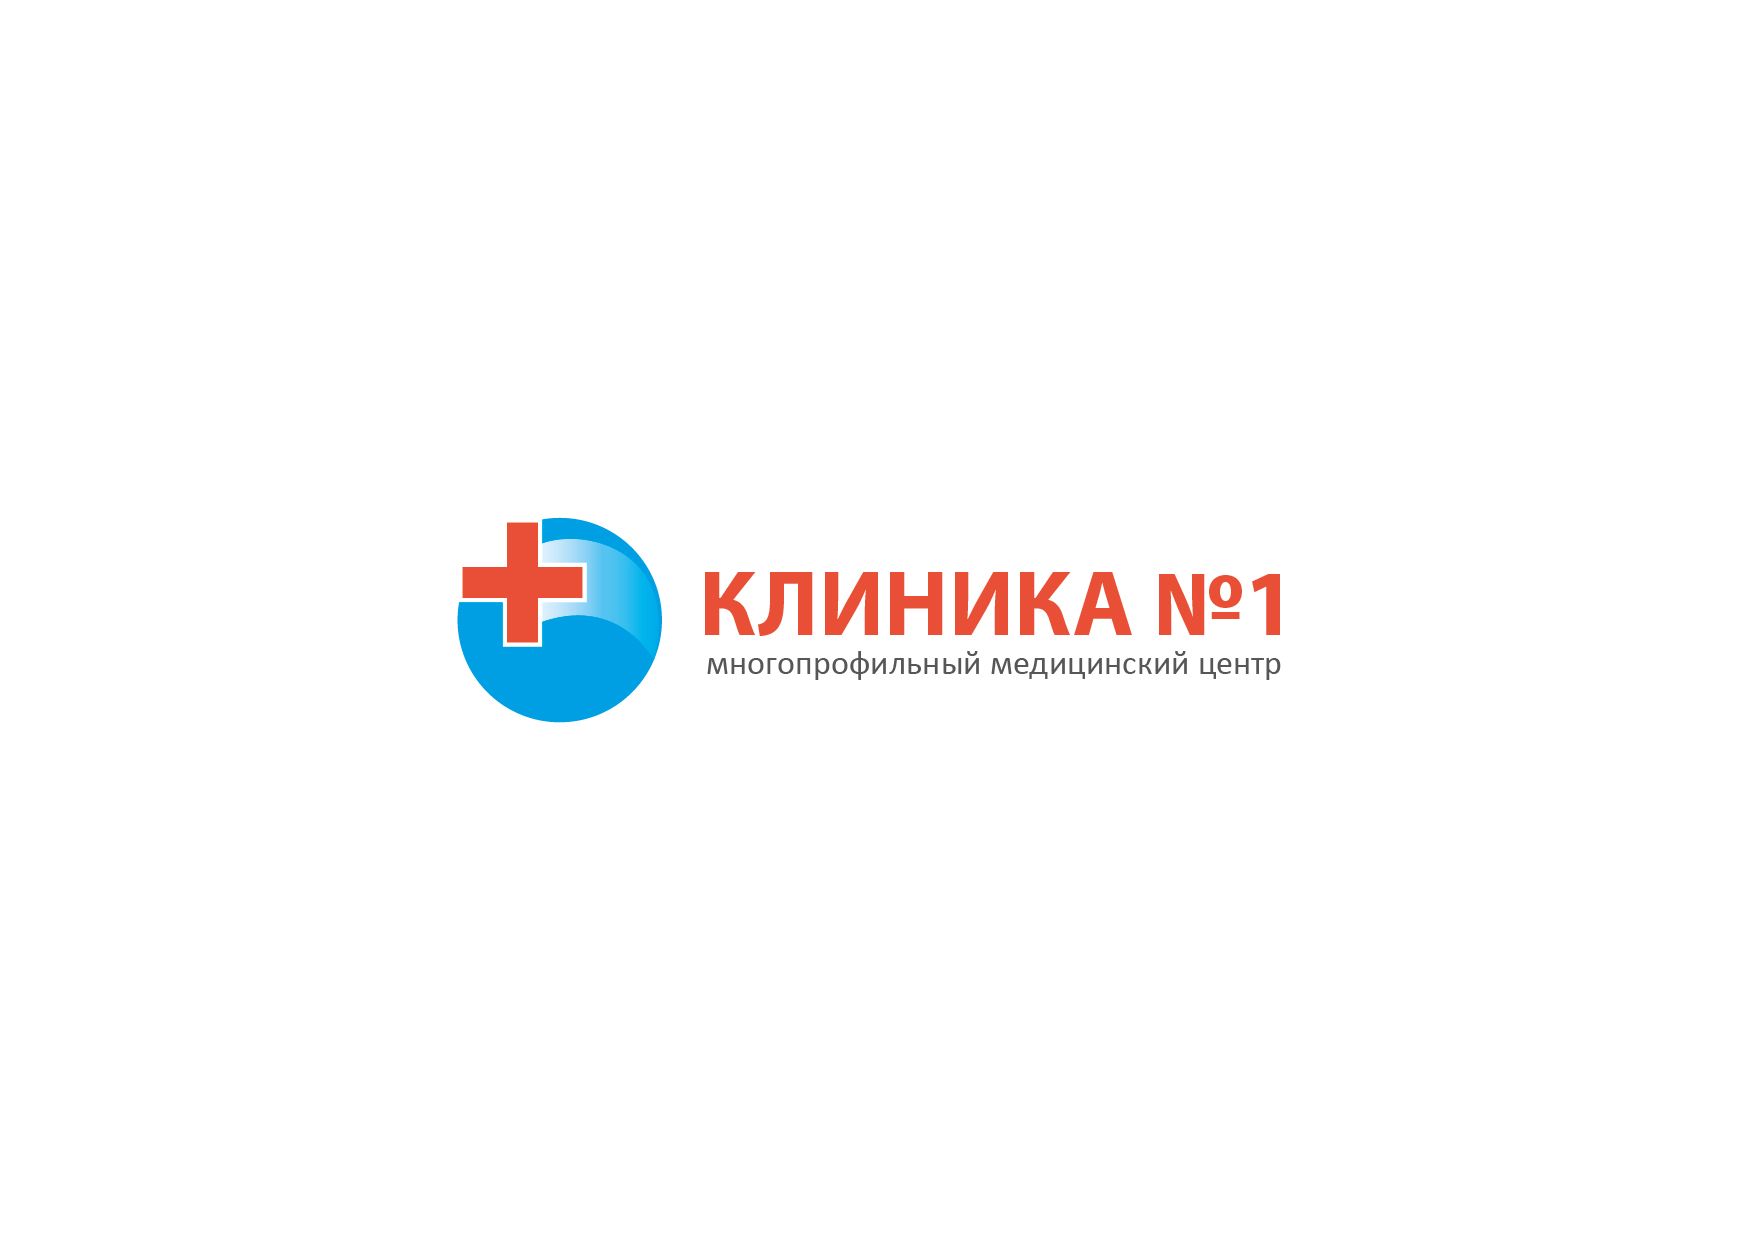 Логотип и фирменный стиль для медицинской клиники - дизайнер LilyLilyLily